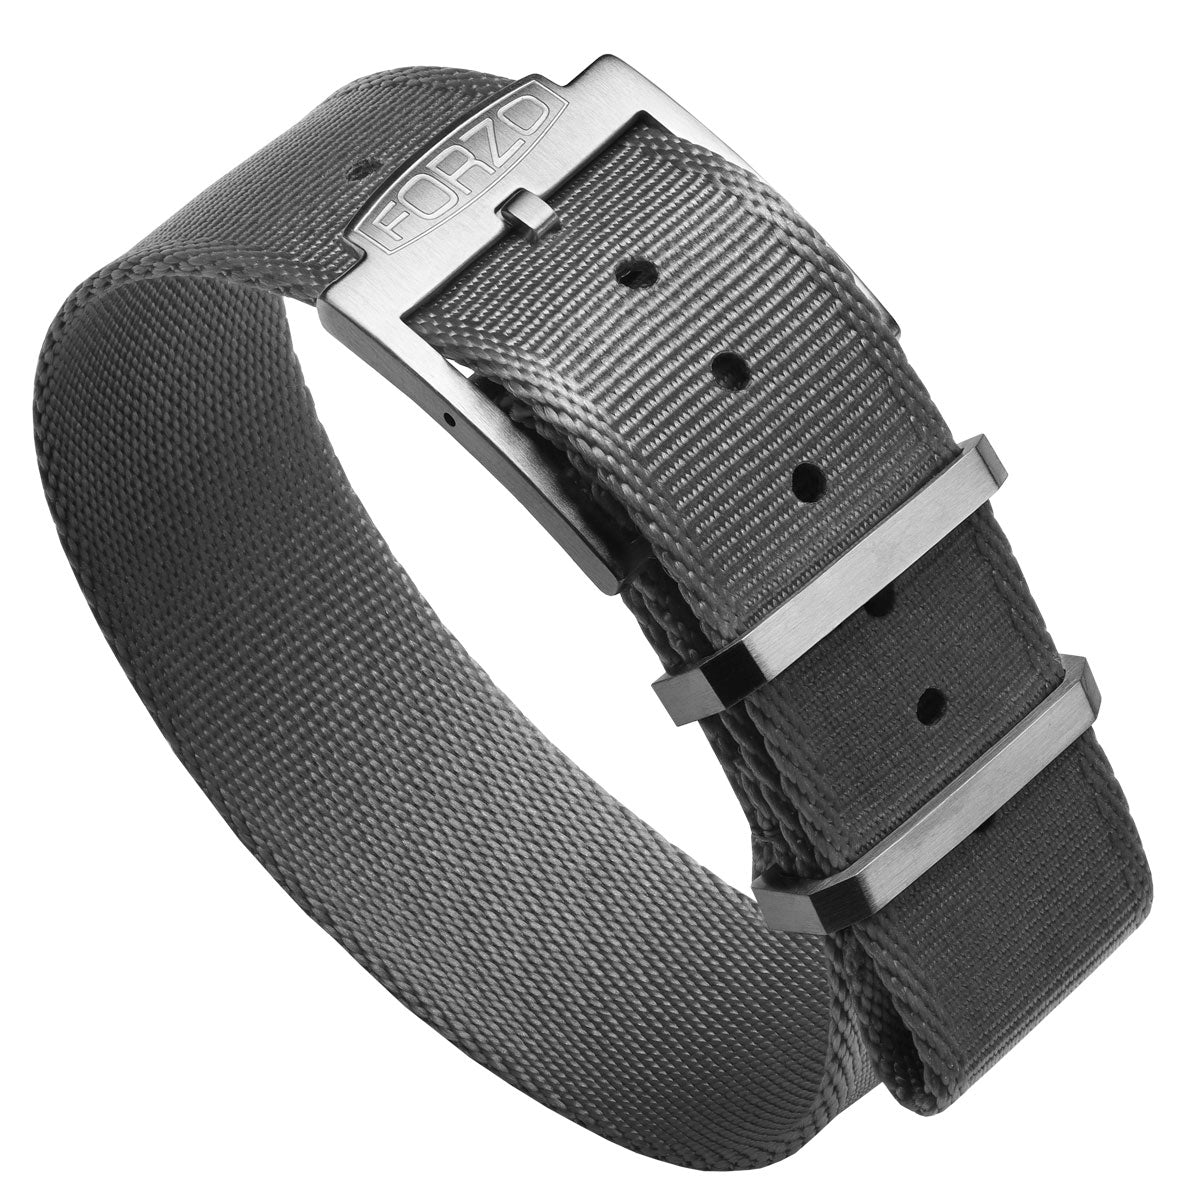 Geckota Ocean-Scout Nylon Watch Strap - Grey - 20mm